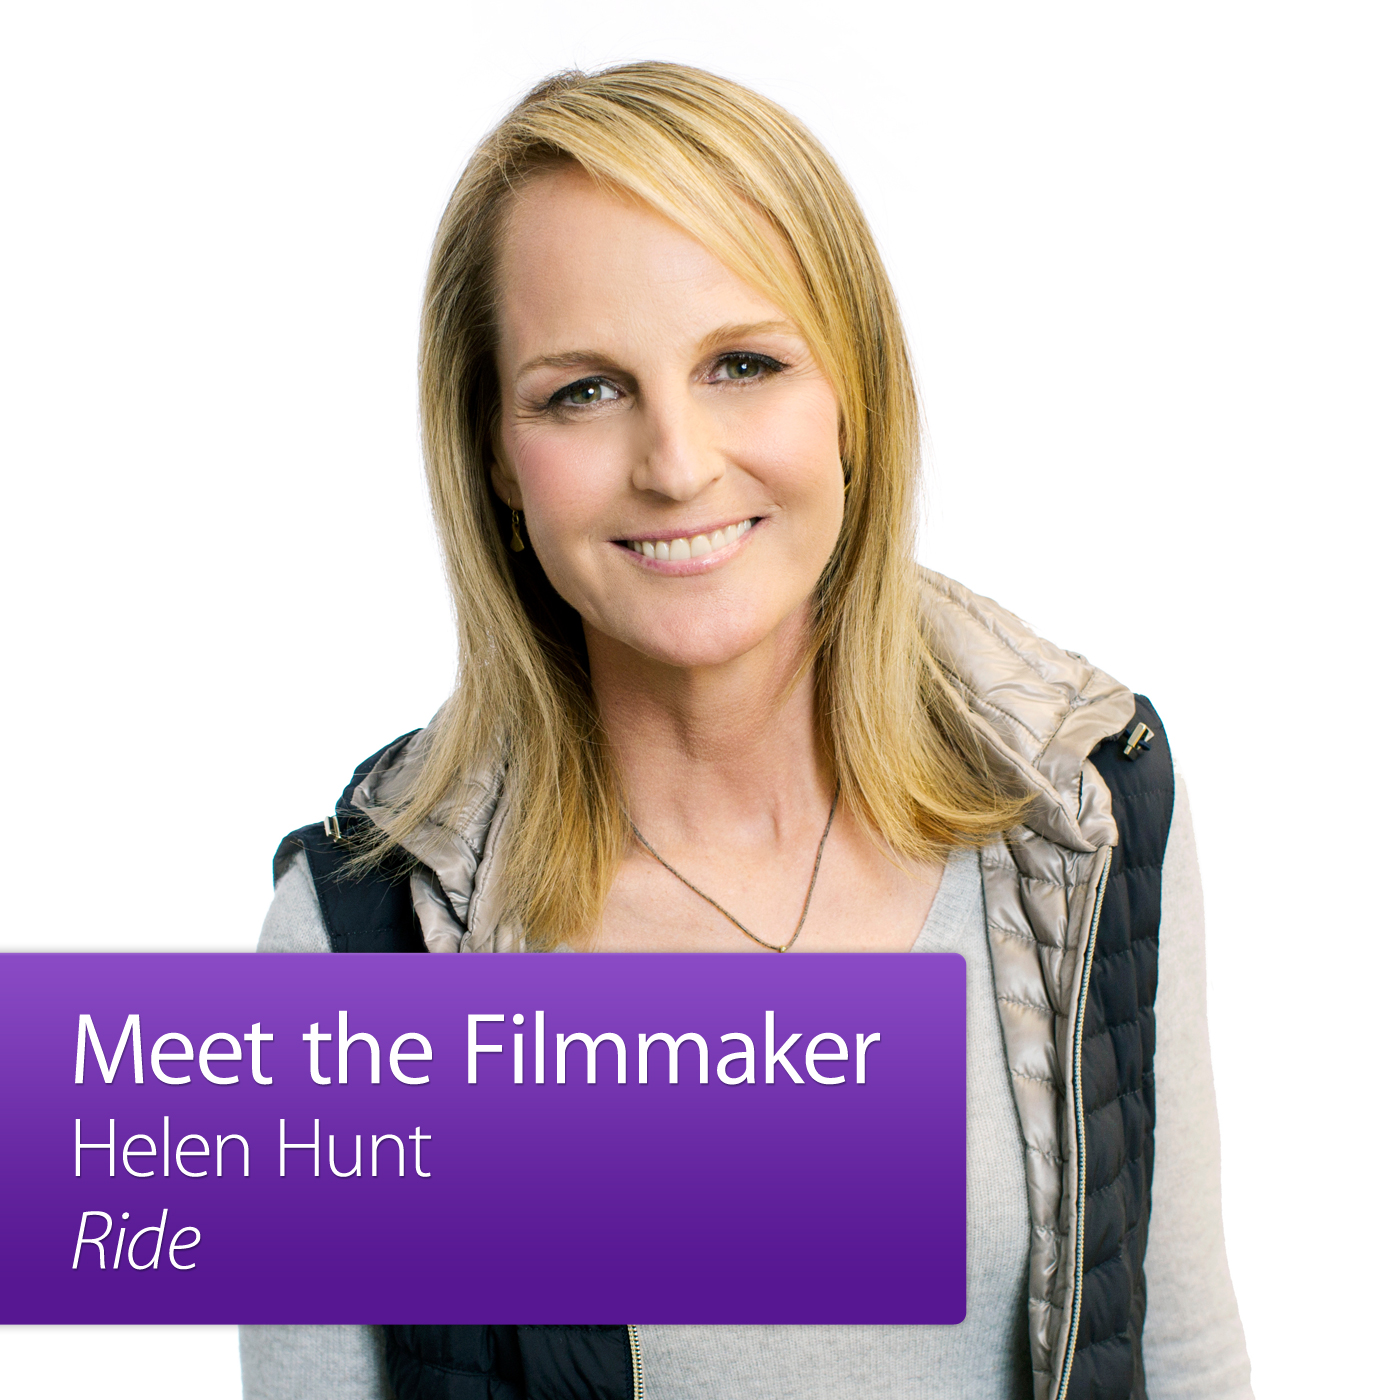 Ride: Meet the Filmmaker